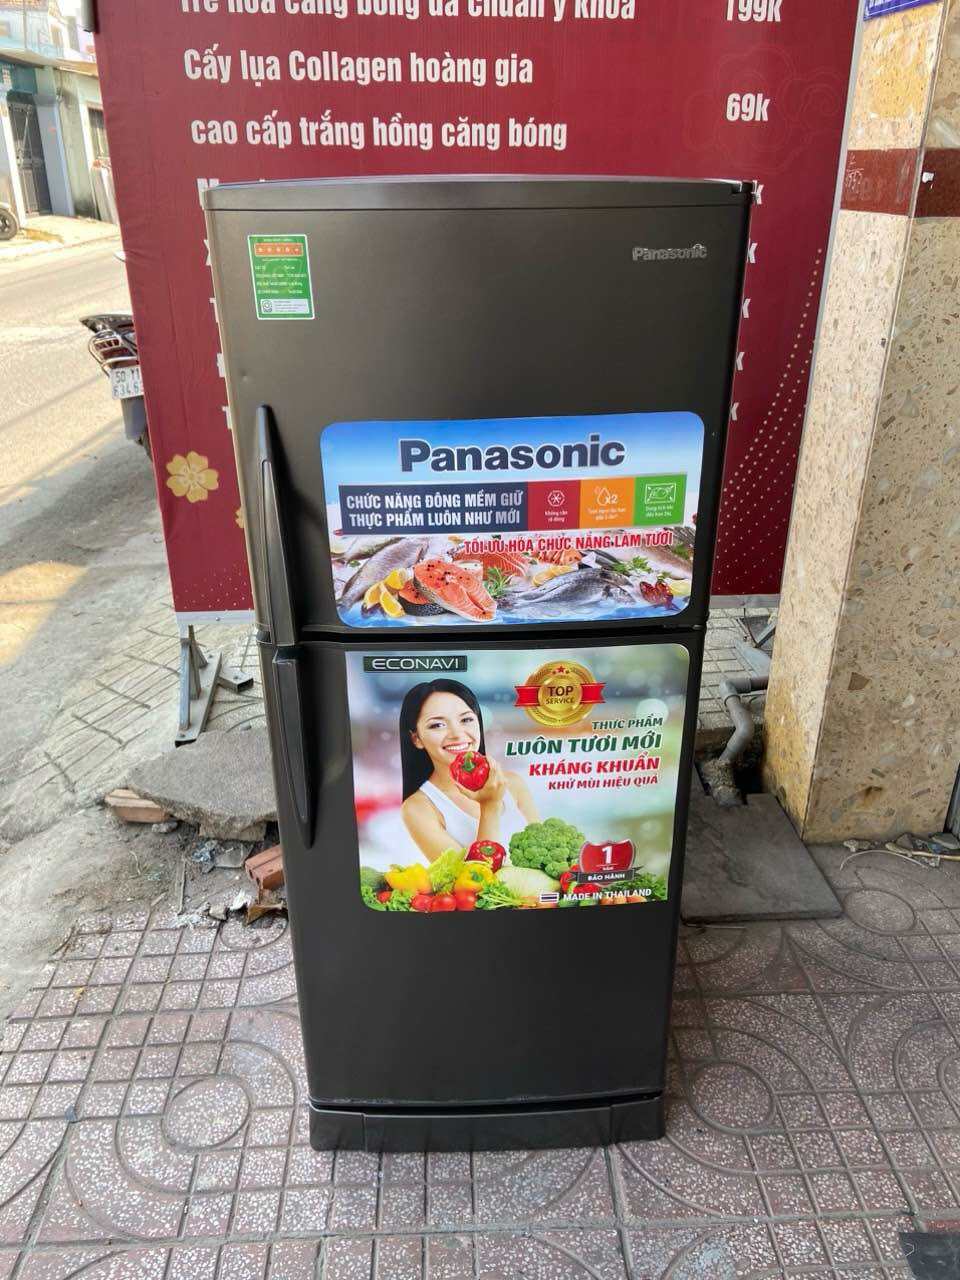 Tủ lạnh Panasonic 160l đã qua sử dụng [ lh/zl 0966717185 ] để đặt hàng nhanh chóng